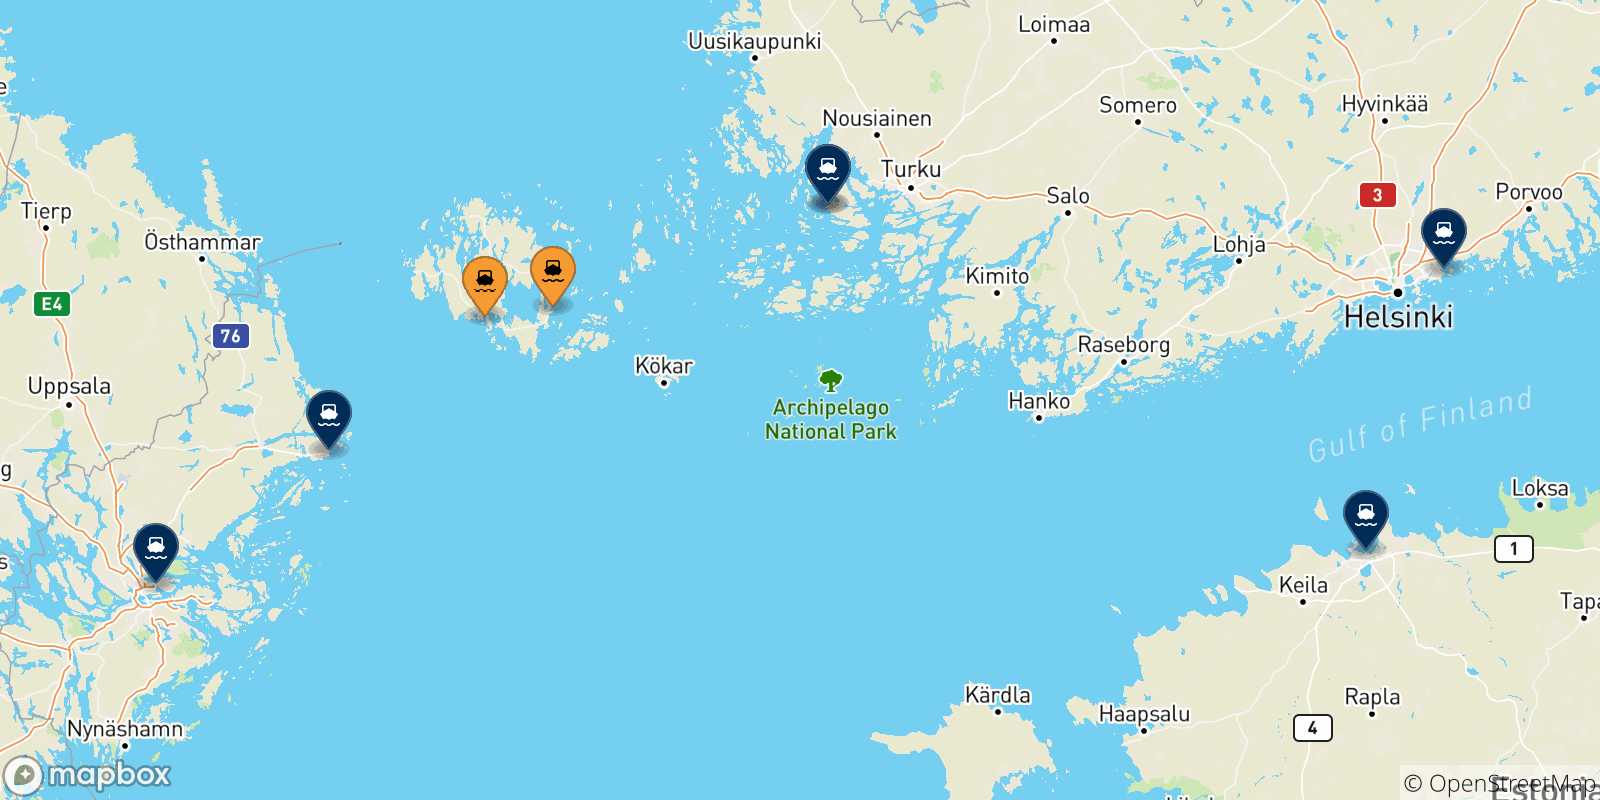 Mappa delle destinazioni raggiungibili dalle Isole Aland